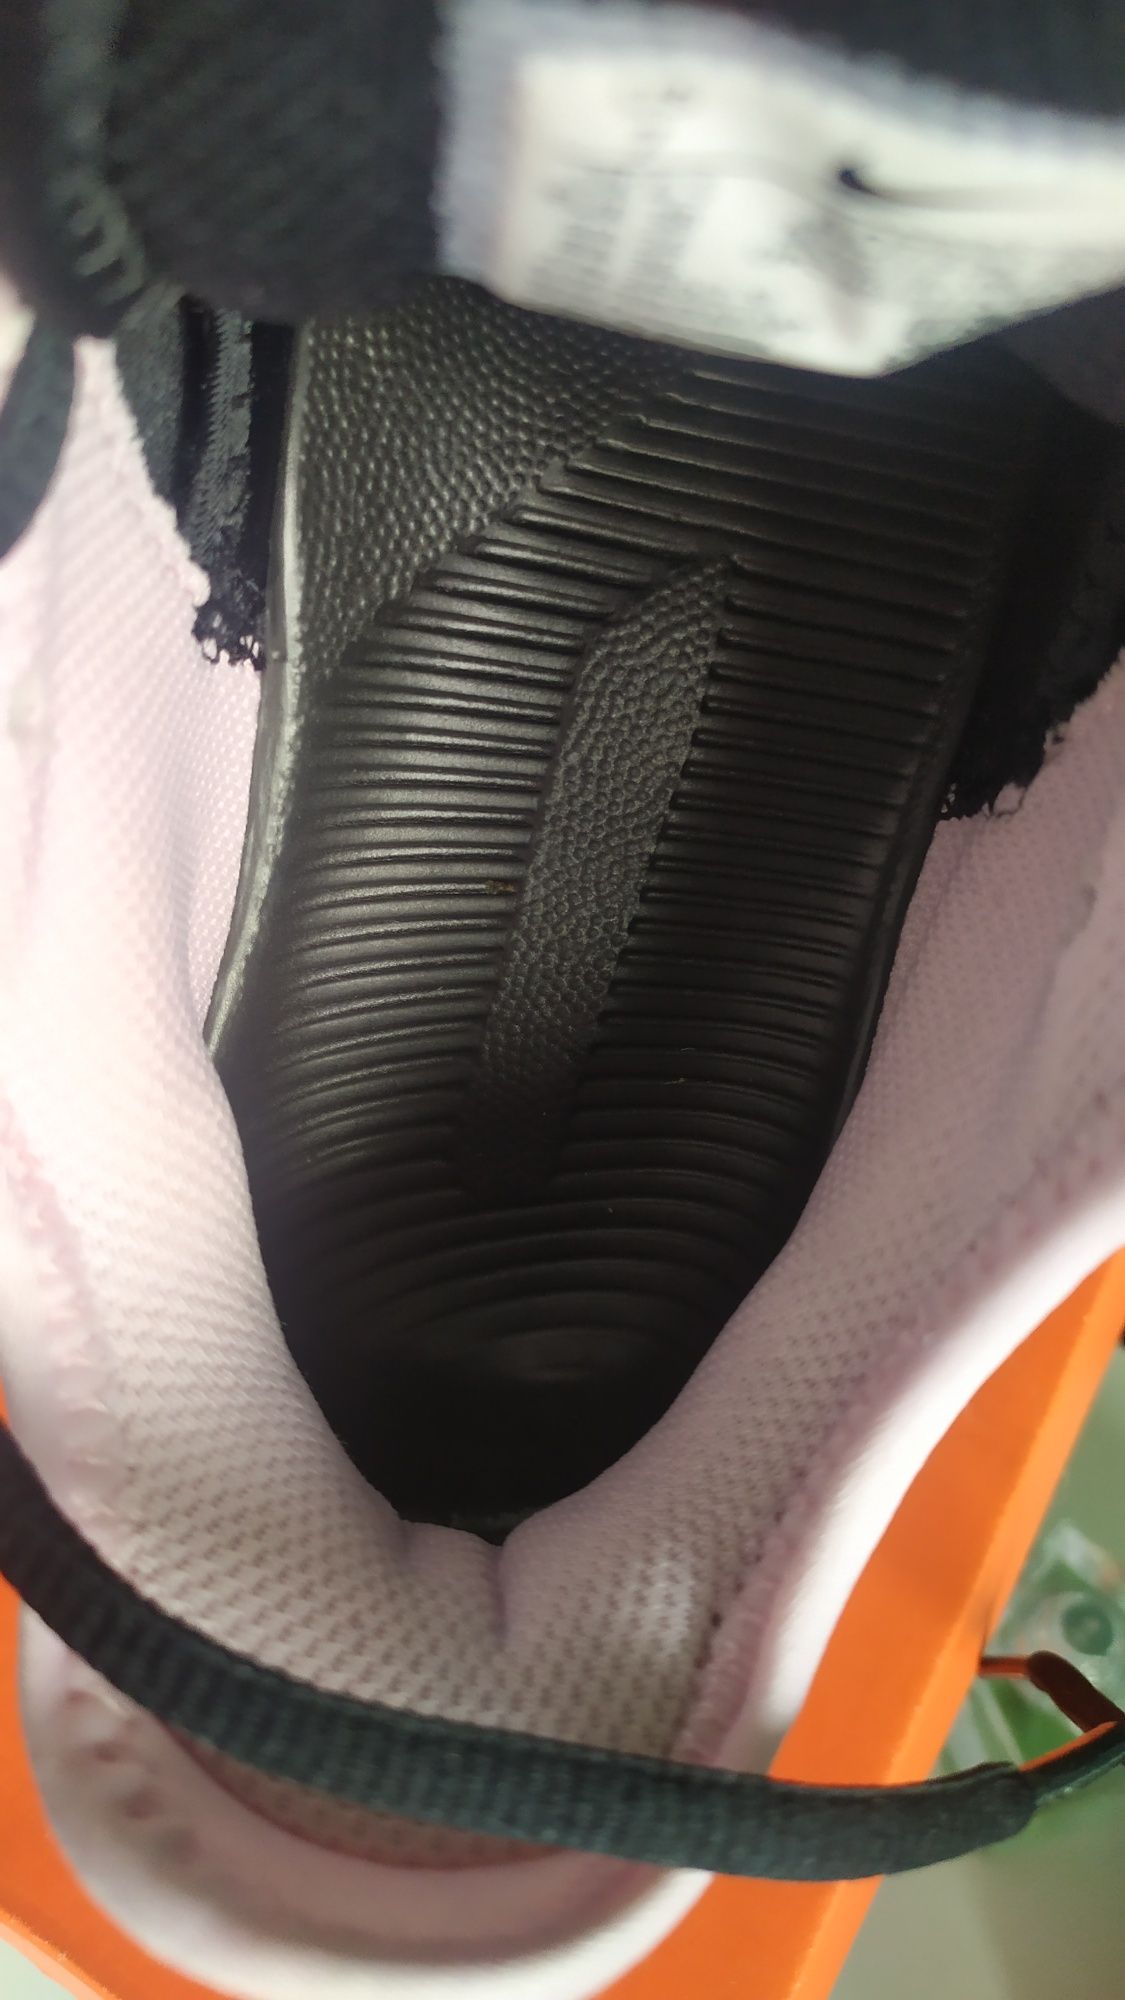 Buty damskie Nike Air Max Wildcard Clay rozmiar 38 (349.99zl)